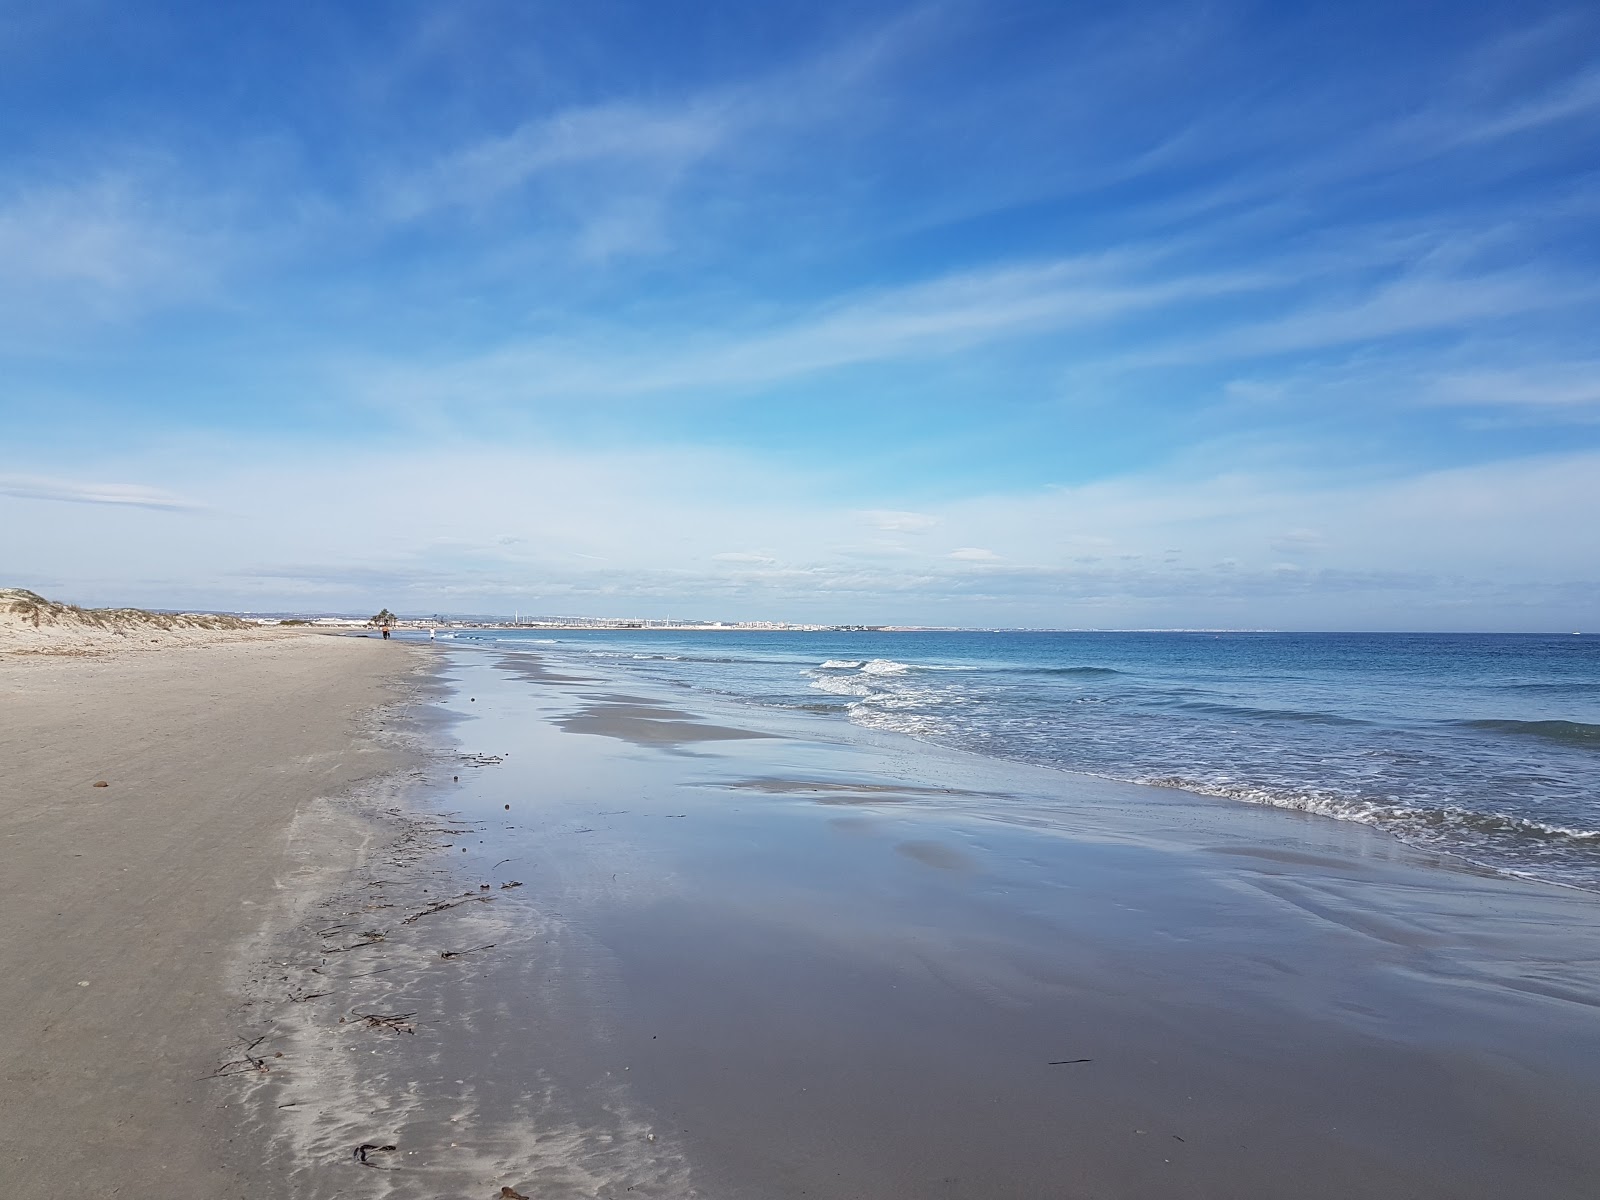 Playa de la Llana'in fotoğrafı parlak kum yüzey ile